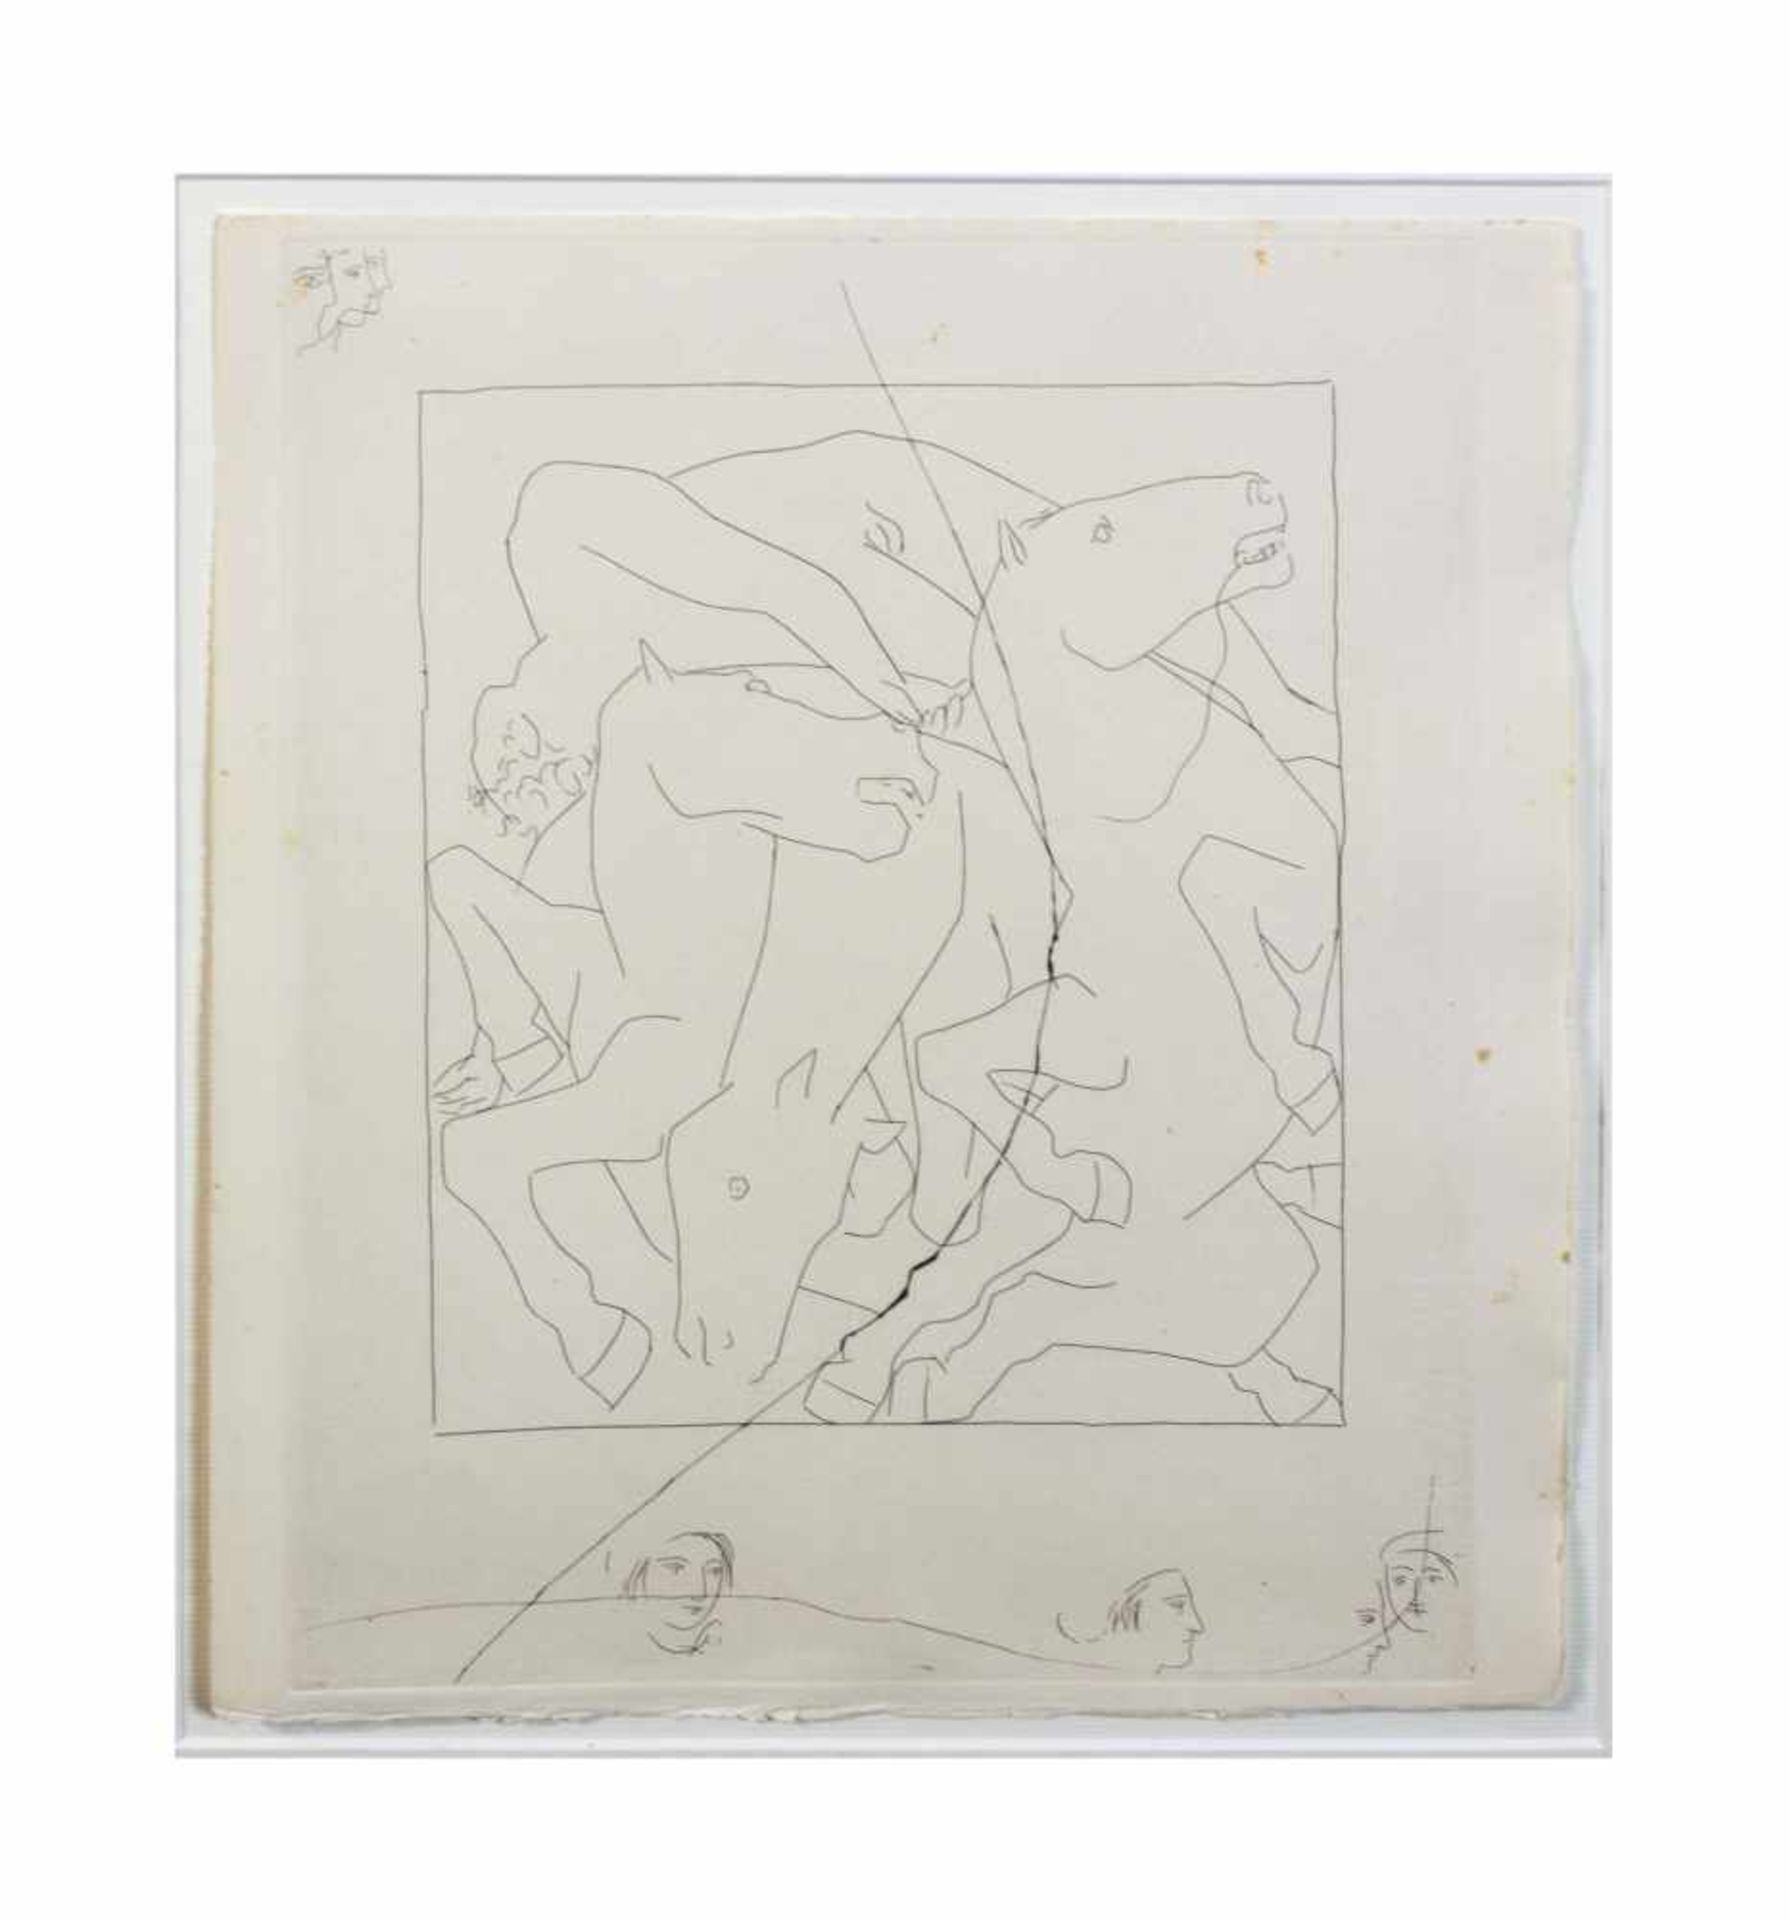 Pablo Picasso (1881 Malaga - 1973 Mougins) (F) Blatt aus Metamorphosen von Ovid, Radierung auf